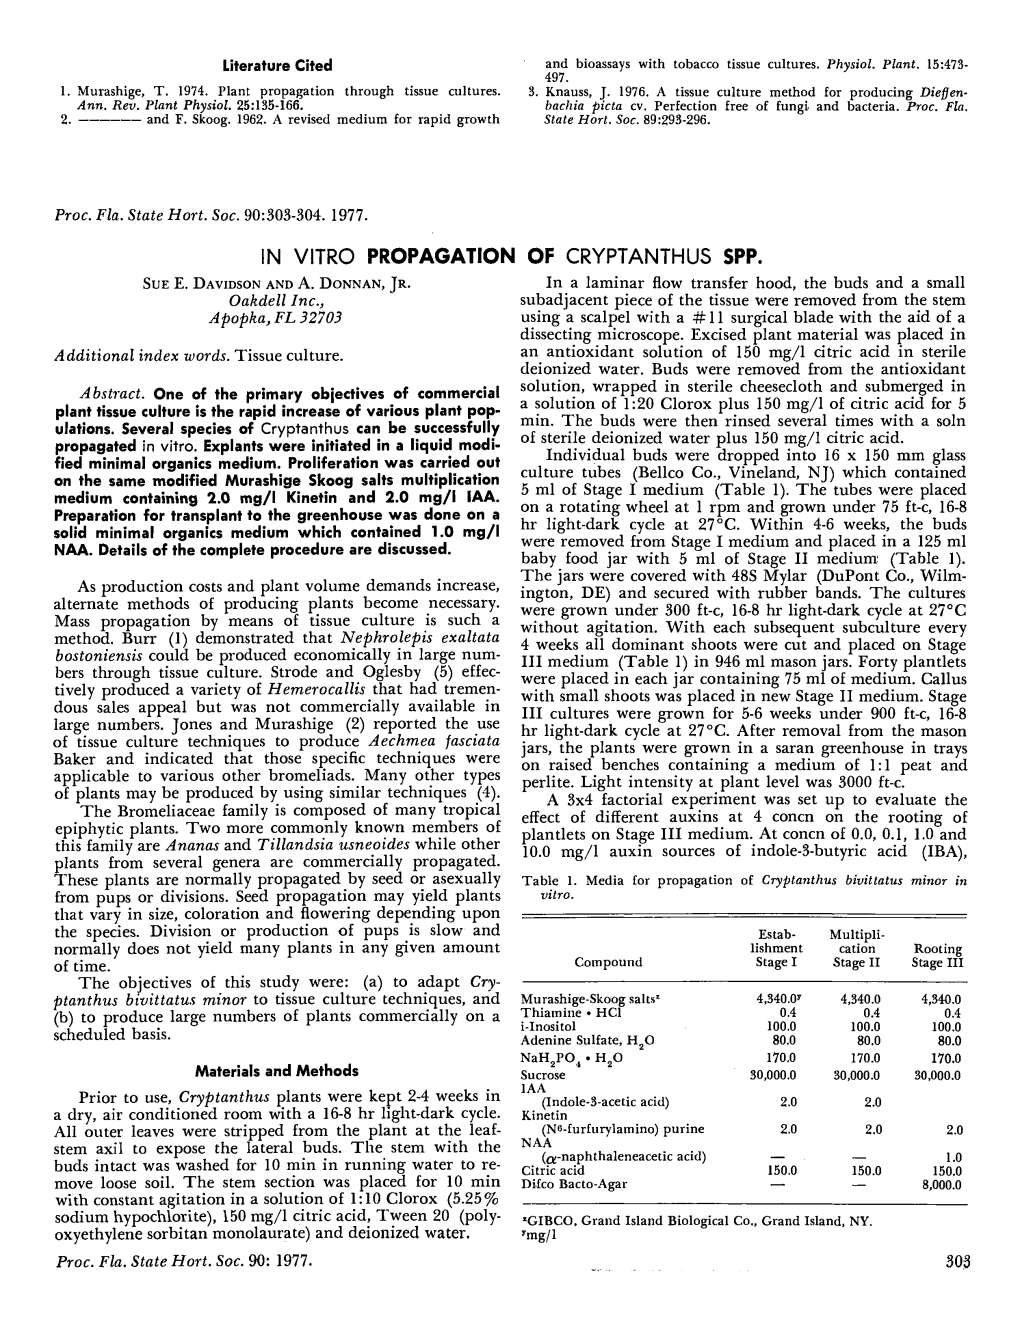 In Vitro Propagation of Cryptanthus Spp. Sue E